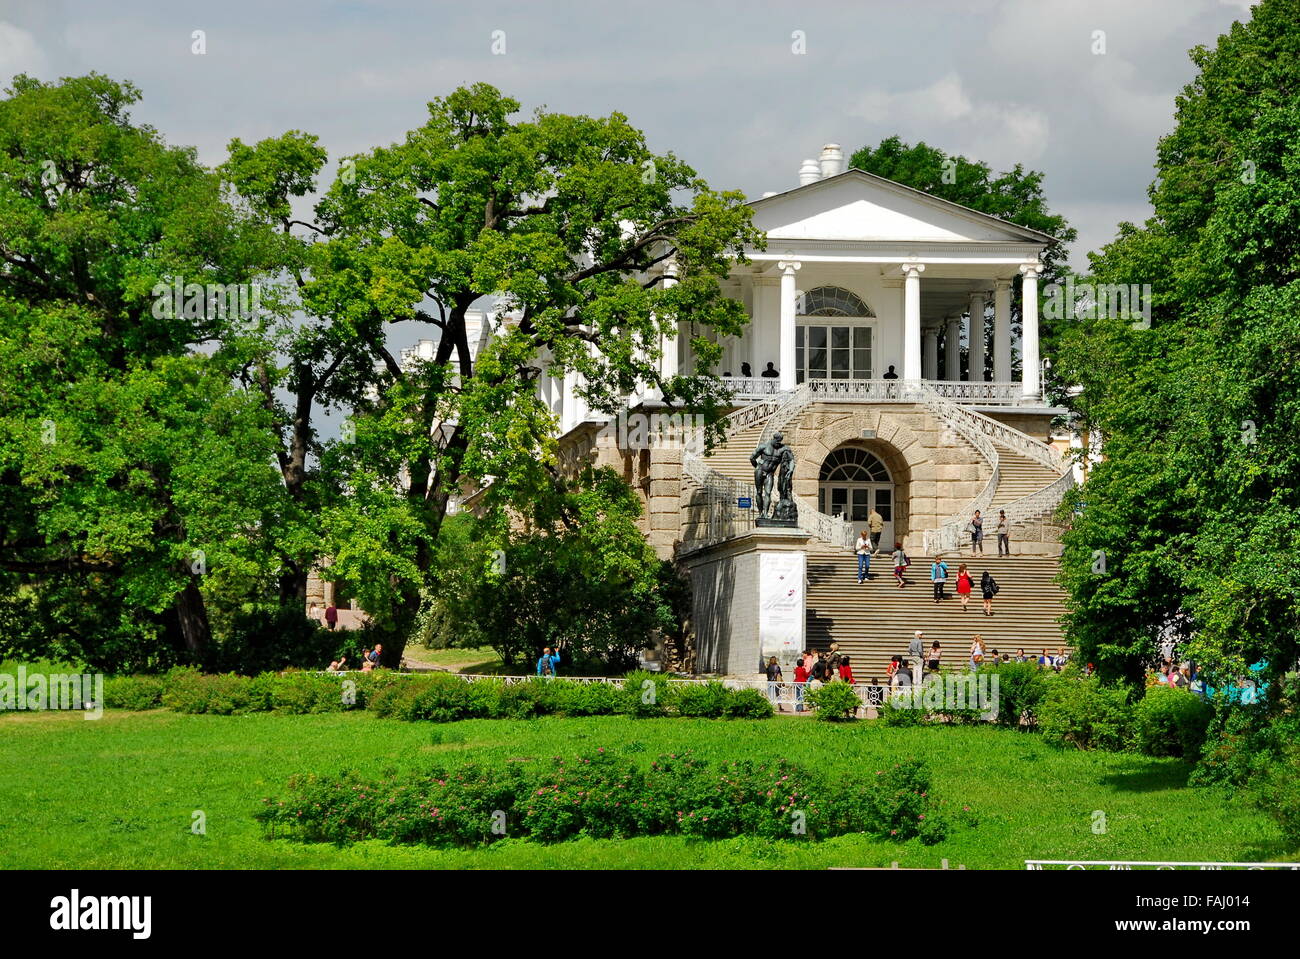 Cameron-Galerie an der Katharinenpalast in Tsarskoye Selo (Puschkin) in der Nähe von St. Petersburg, Russland Stockfoto